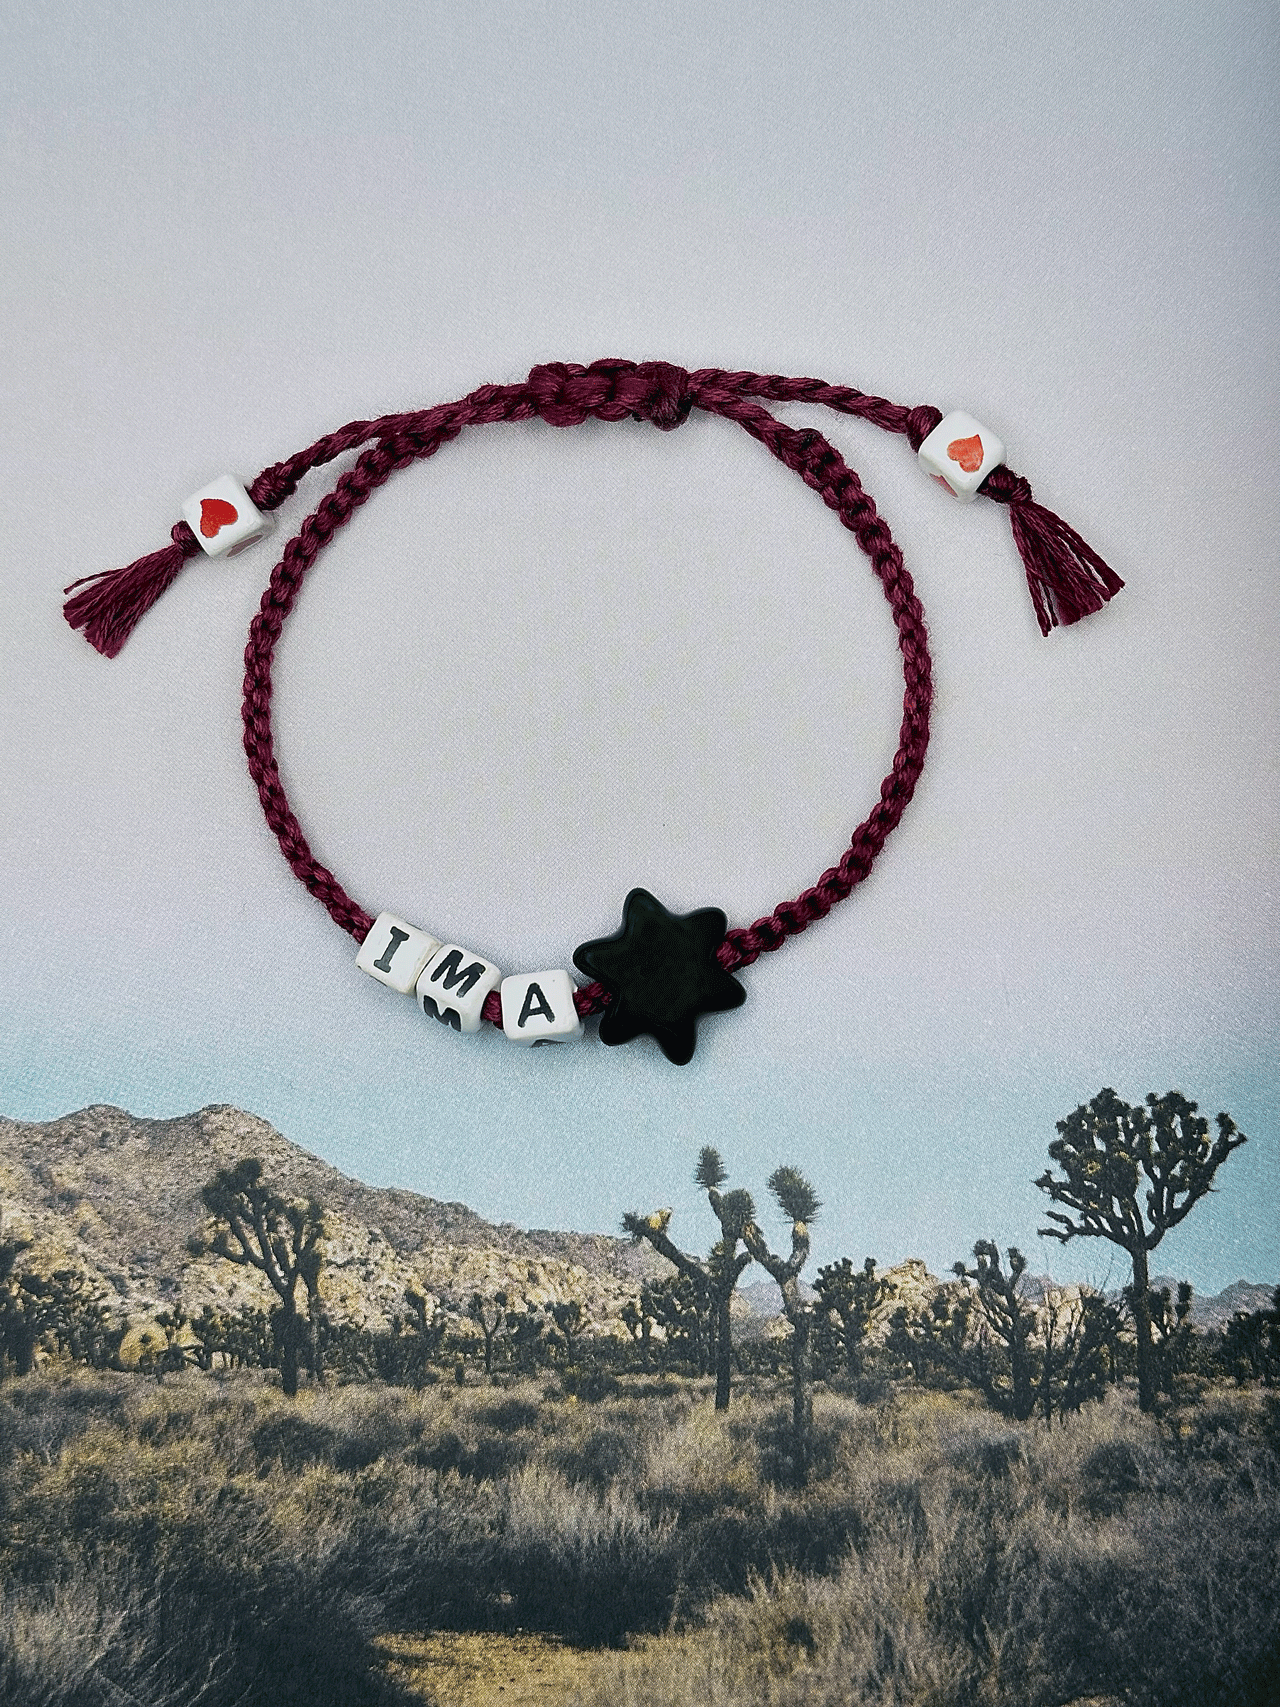 IM A STAR Bracelet | Hand Woven | Peruvian Beads